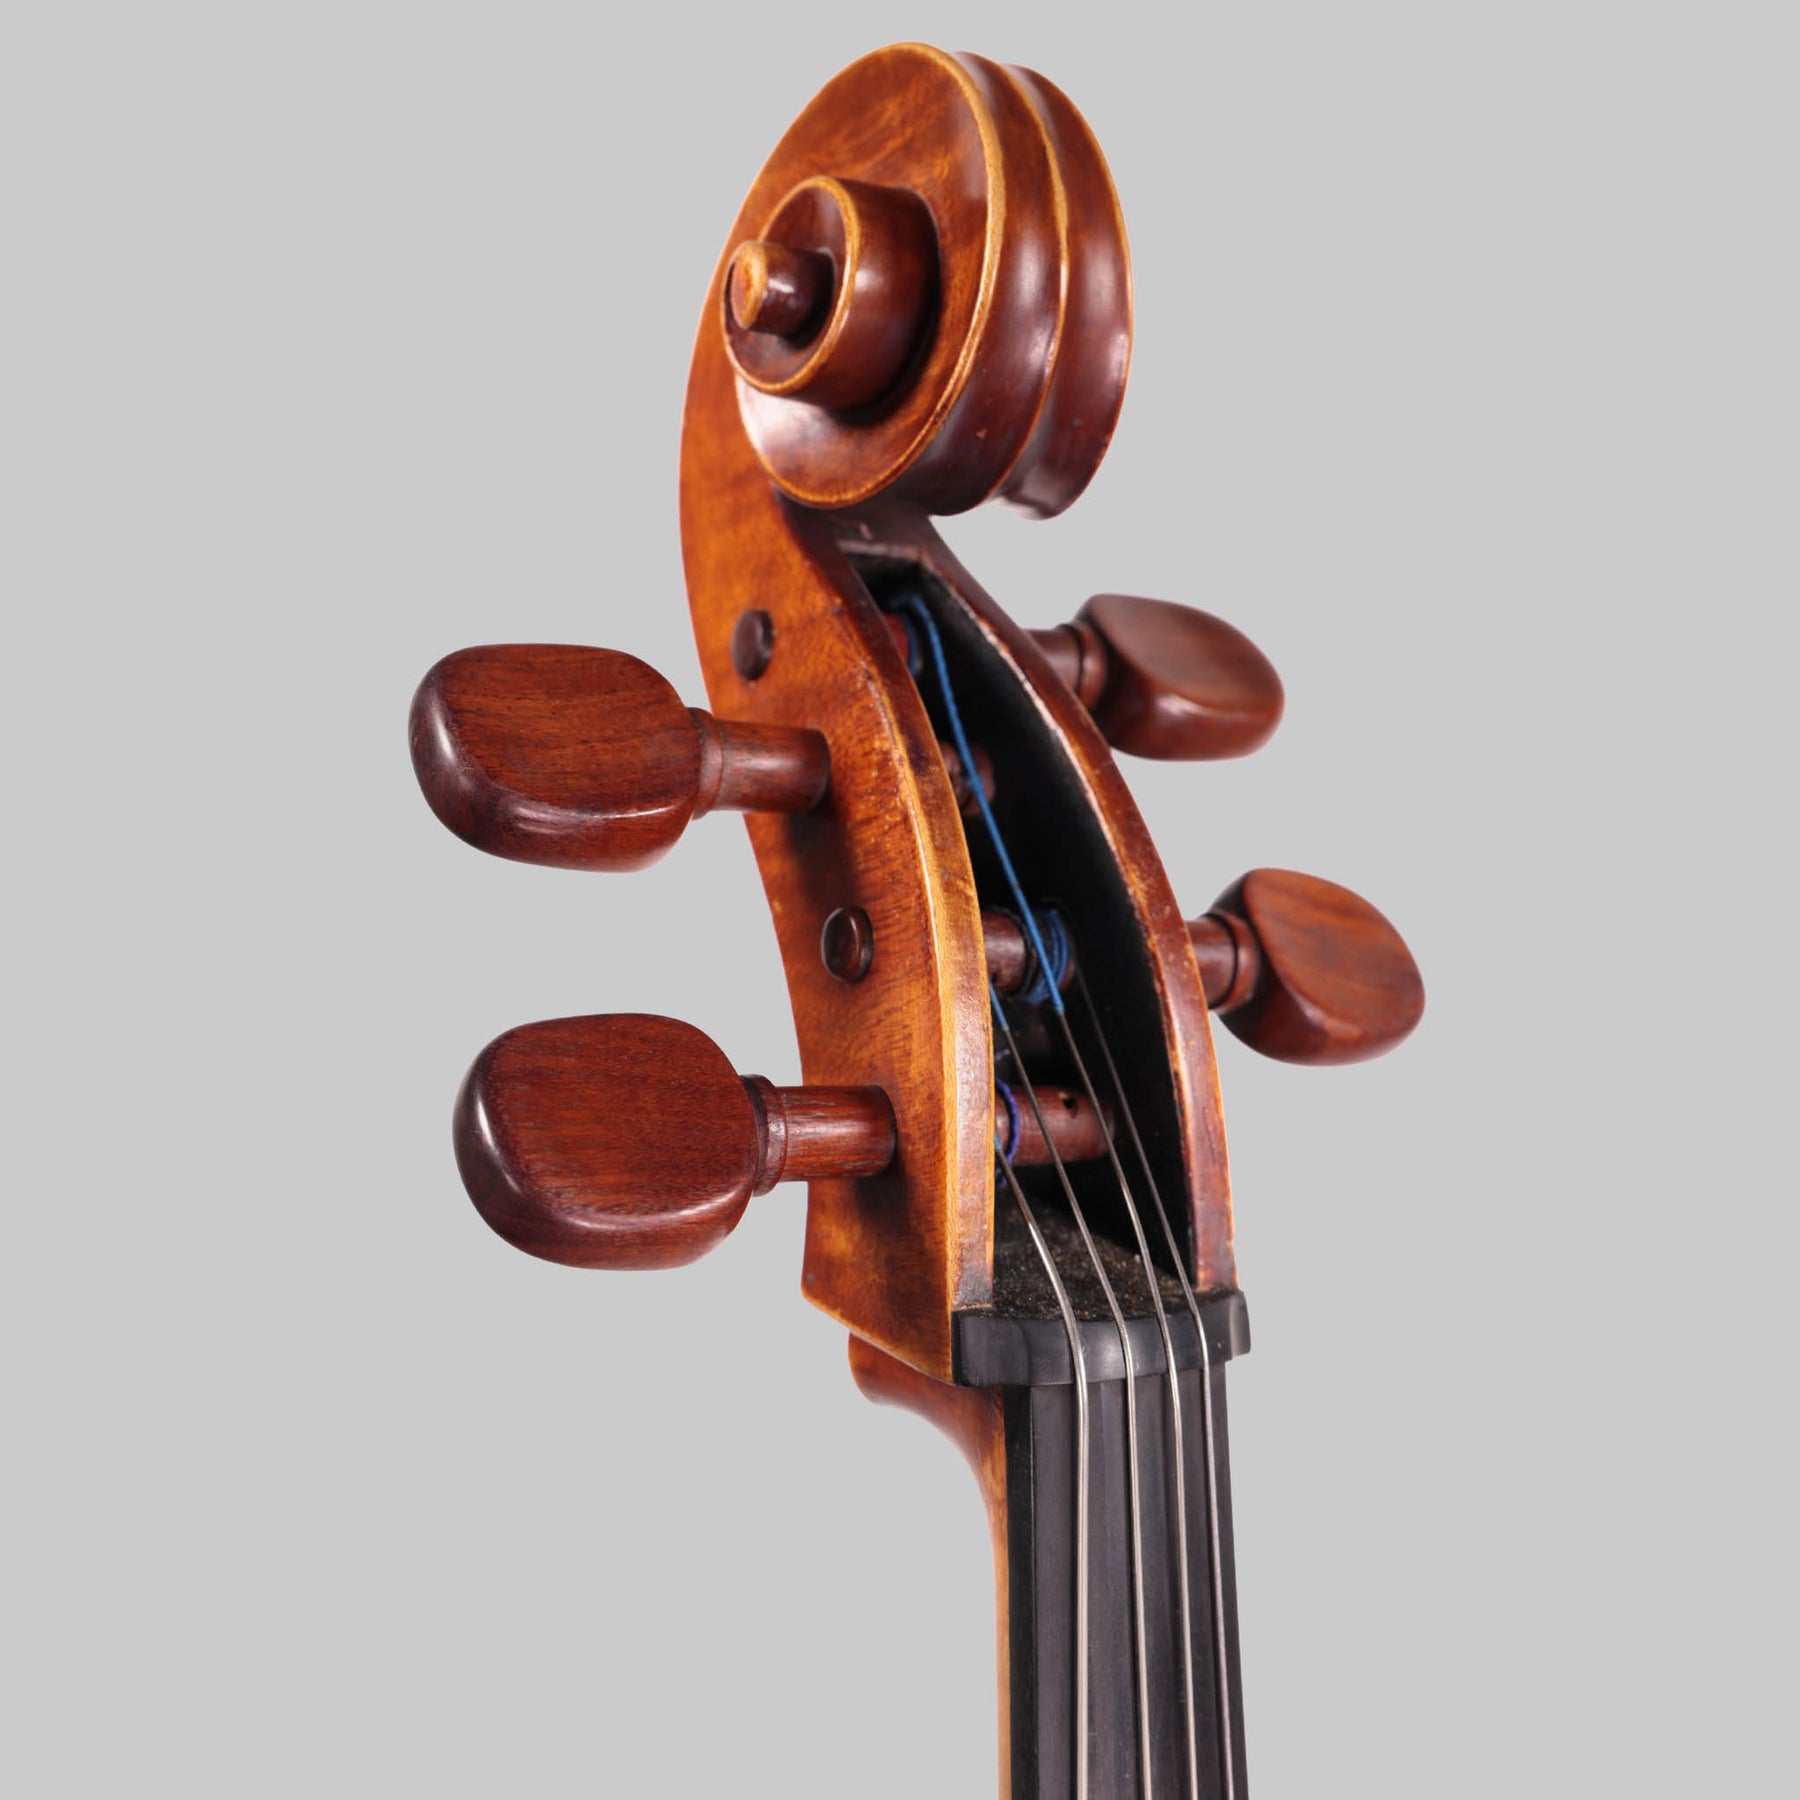 Arturo Moreno, Mexico D.F. Cello 1992